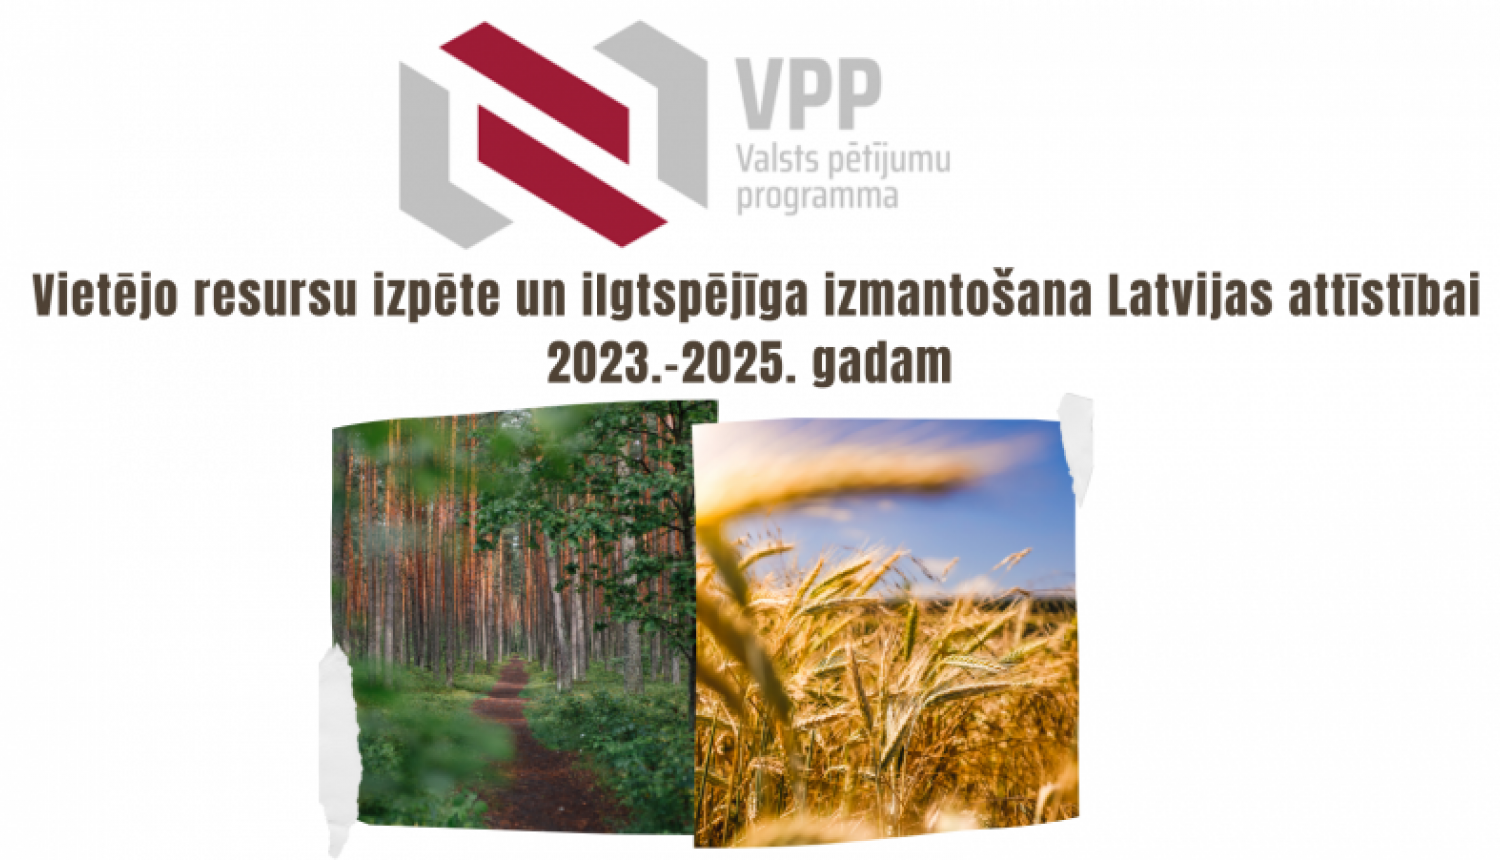 Valsts pētījumu programmas Vietējo resursu izpēte un ilgtspējīga izmantošana Latvijas attīstībai 2023.-2025. gadam 